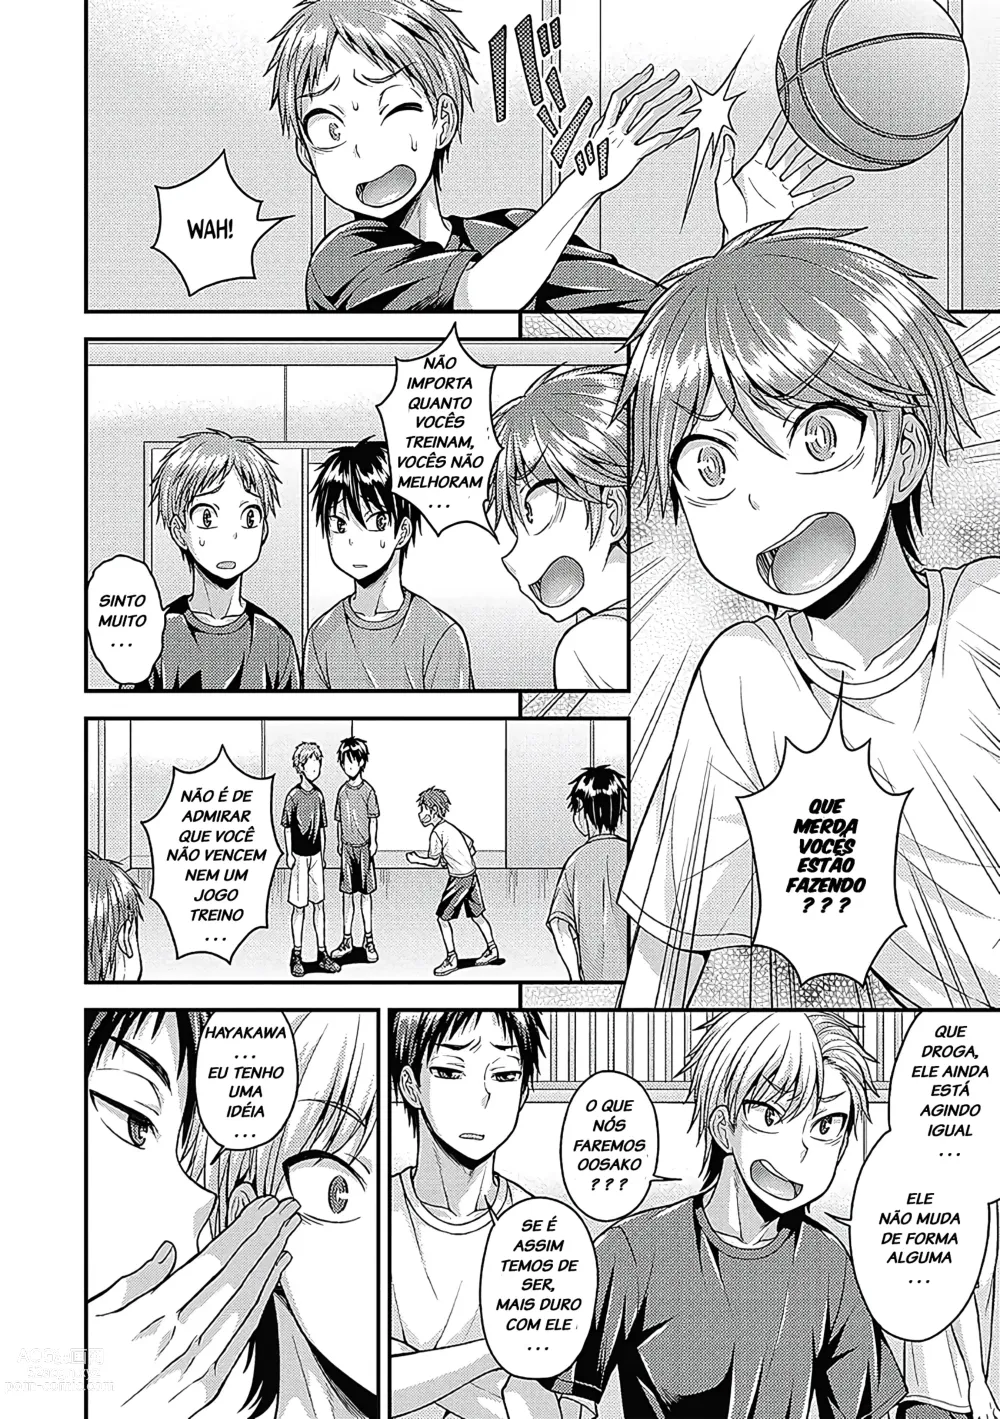 Page 22 of manga Namaiki  Ichinen o Shuusei Shiro! + Zoku Namaiki  Ichinen o Shuusei Shiro!